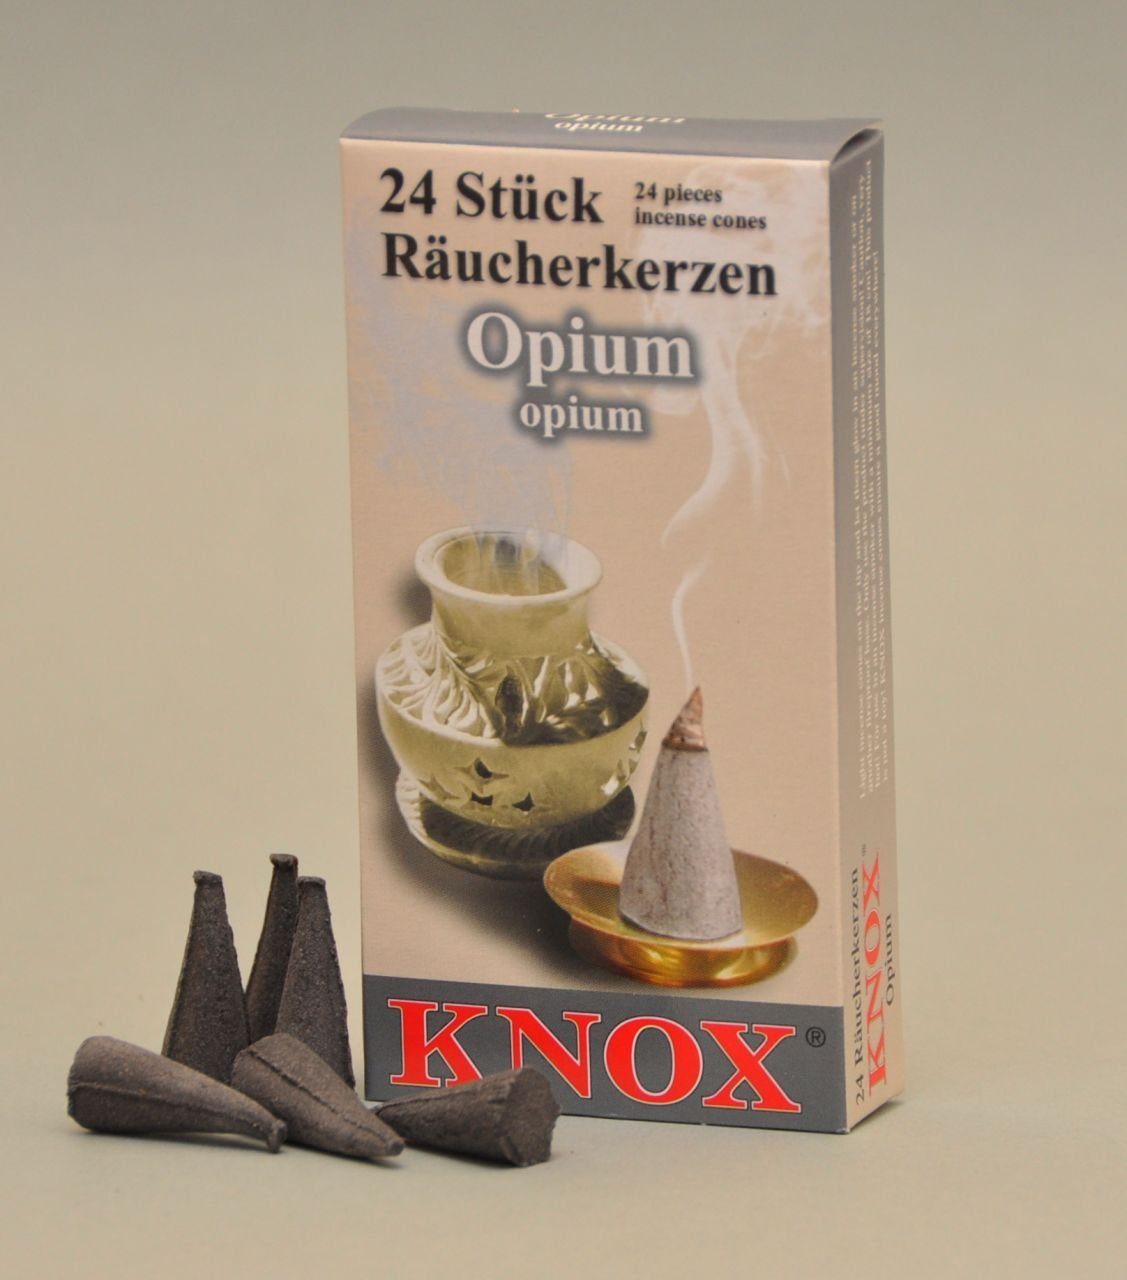 KNOX Räucherhaus Knox Räucherkerzen 24 Stück - Opium